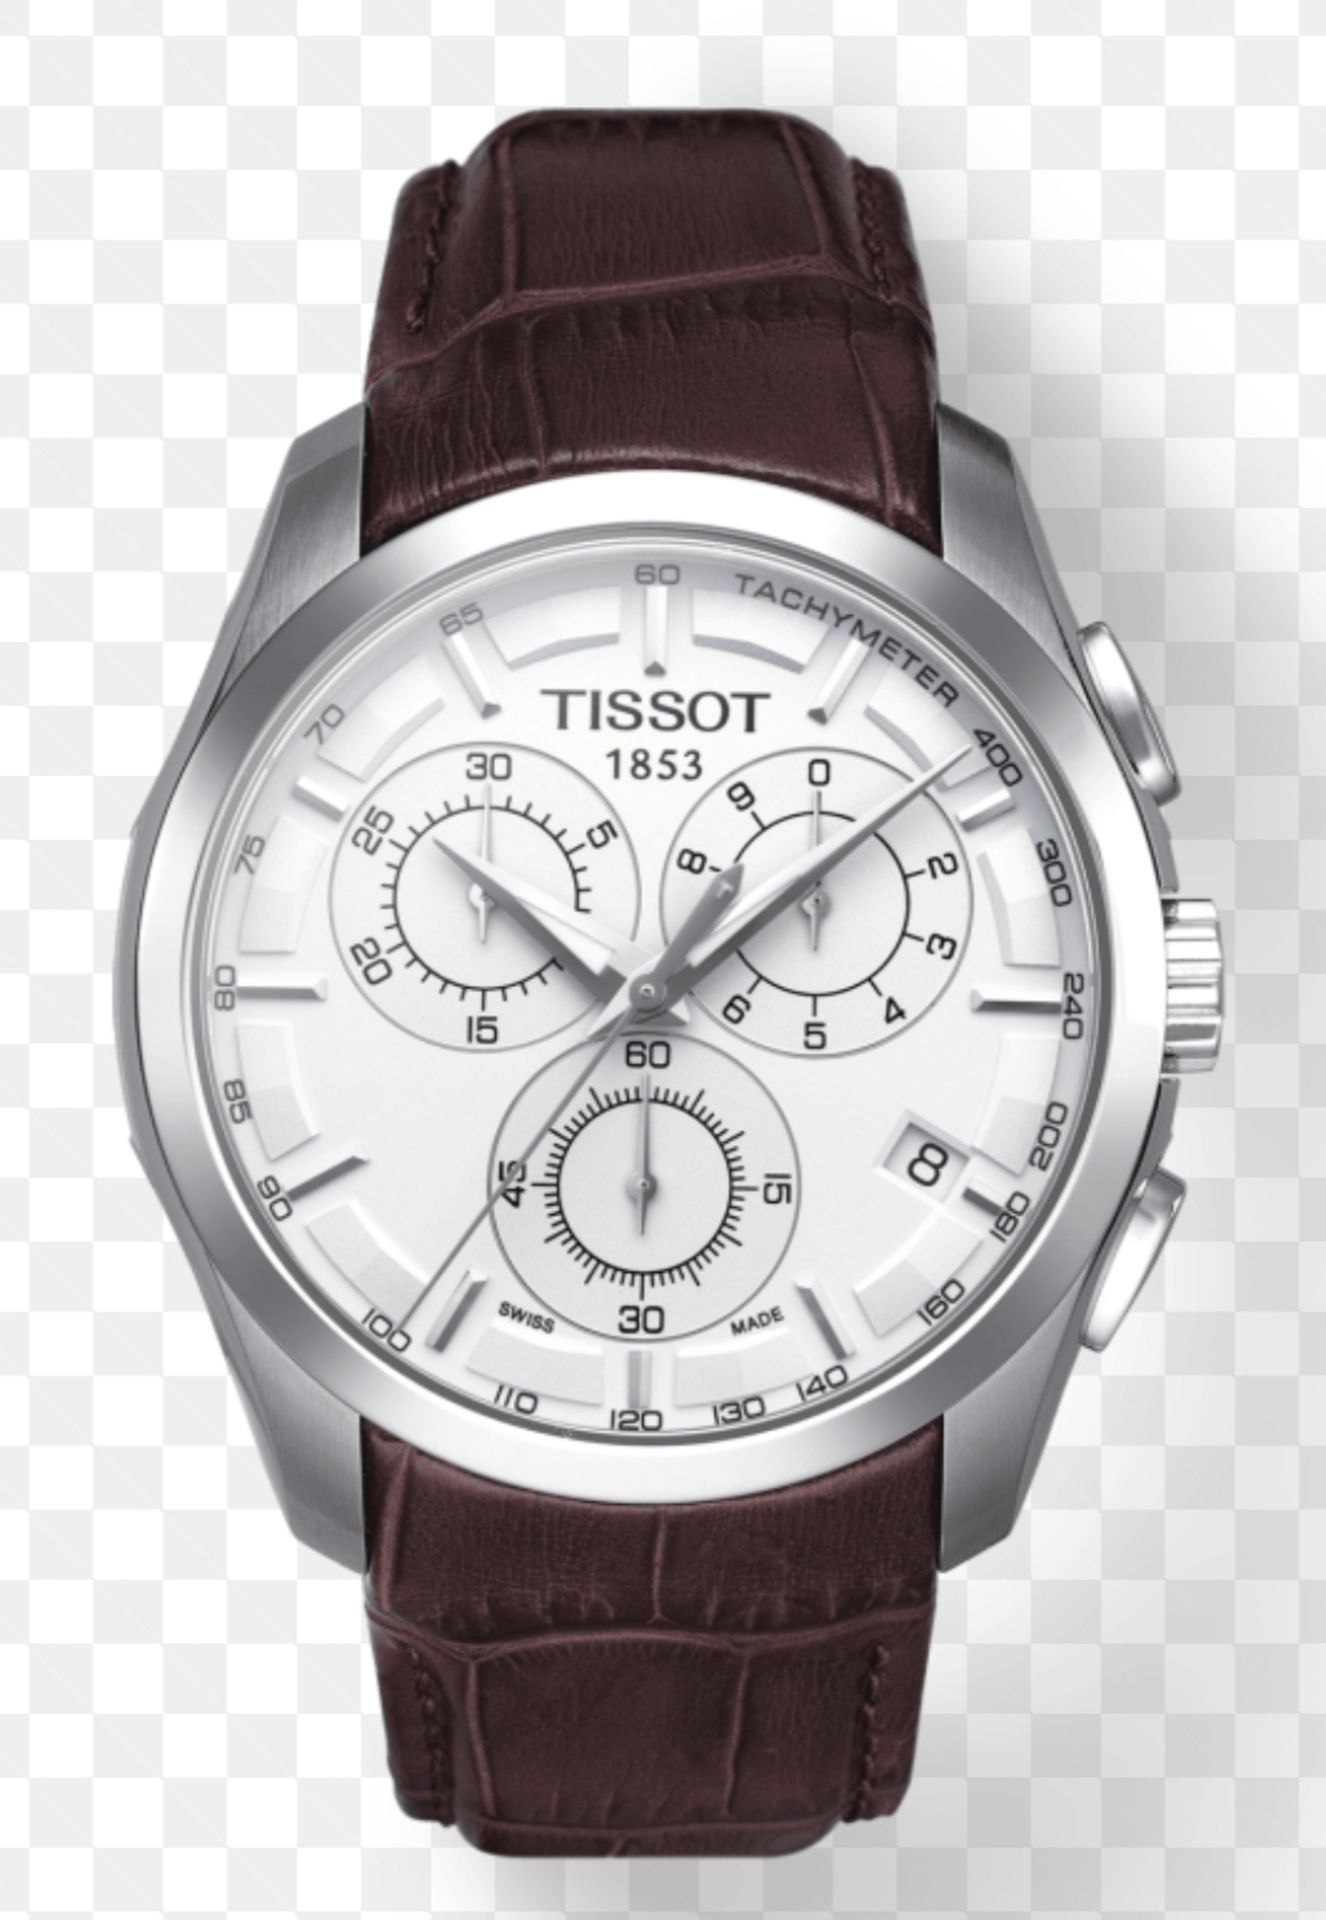 Tissot - Couturier Chronograph - T035.617.16.031.00 - Men's Watch